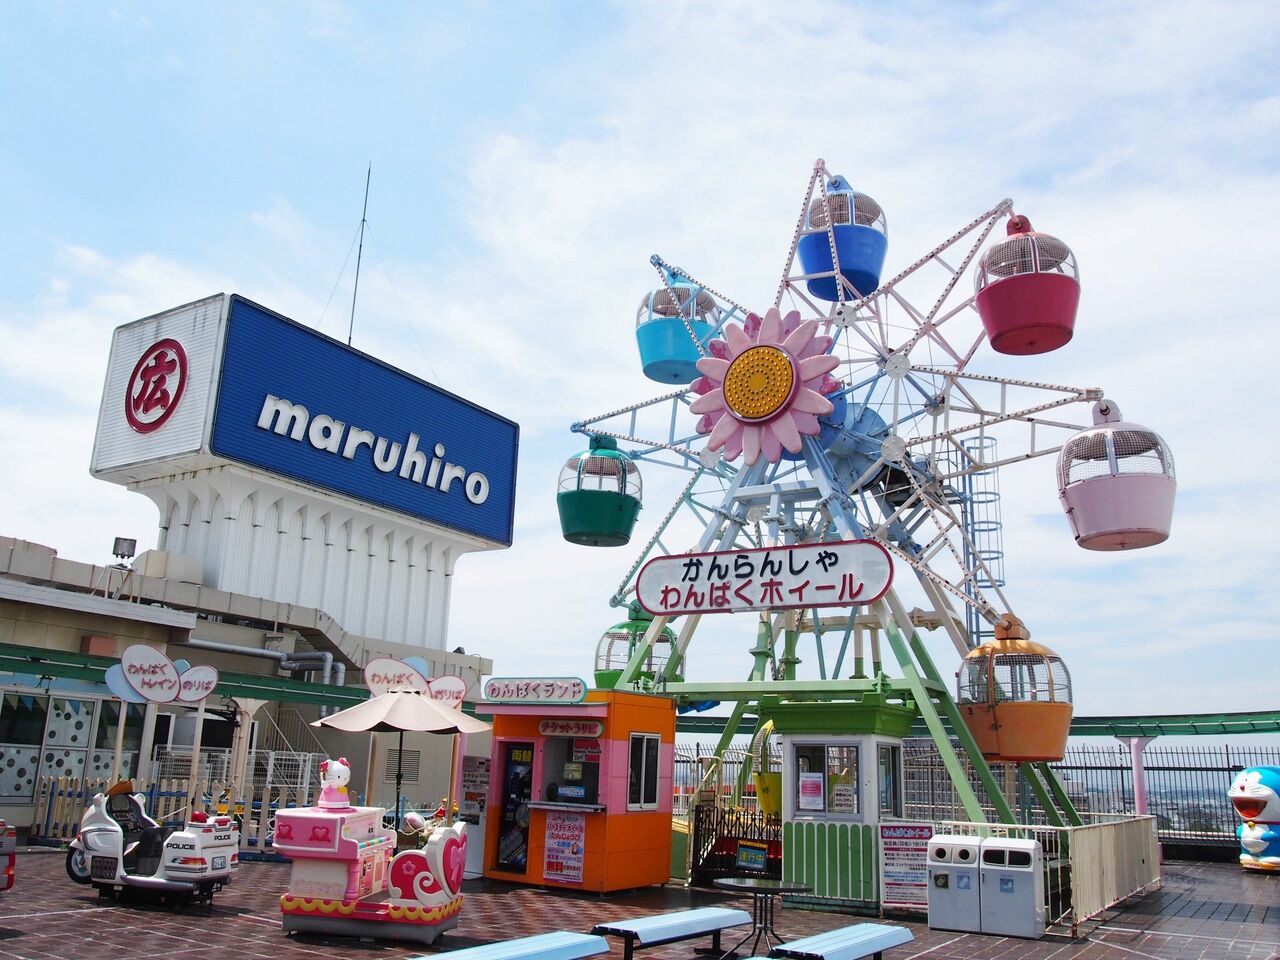 丸広百貨店わんぱくランド　埼玉県川越市。1992年に設置された、高さ11.7mの屋上観覧車。2019年、屋上遊園地閉鎖に伴い撤去された。